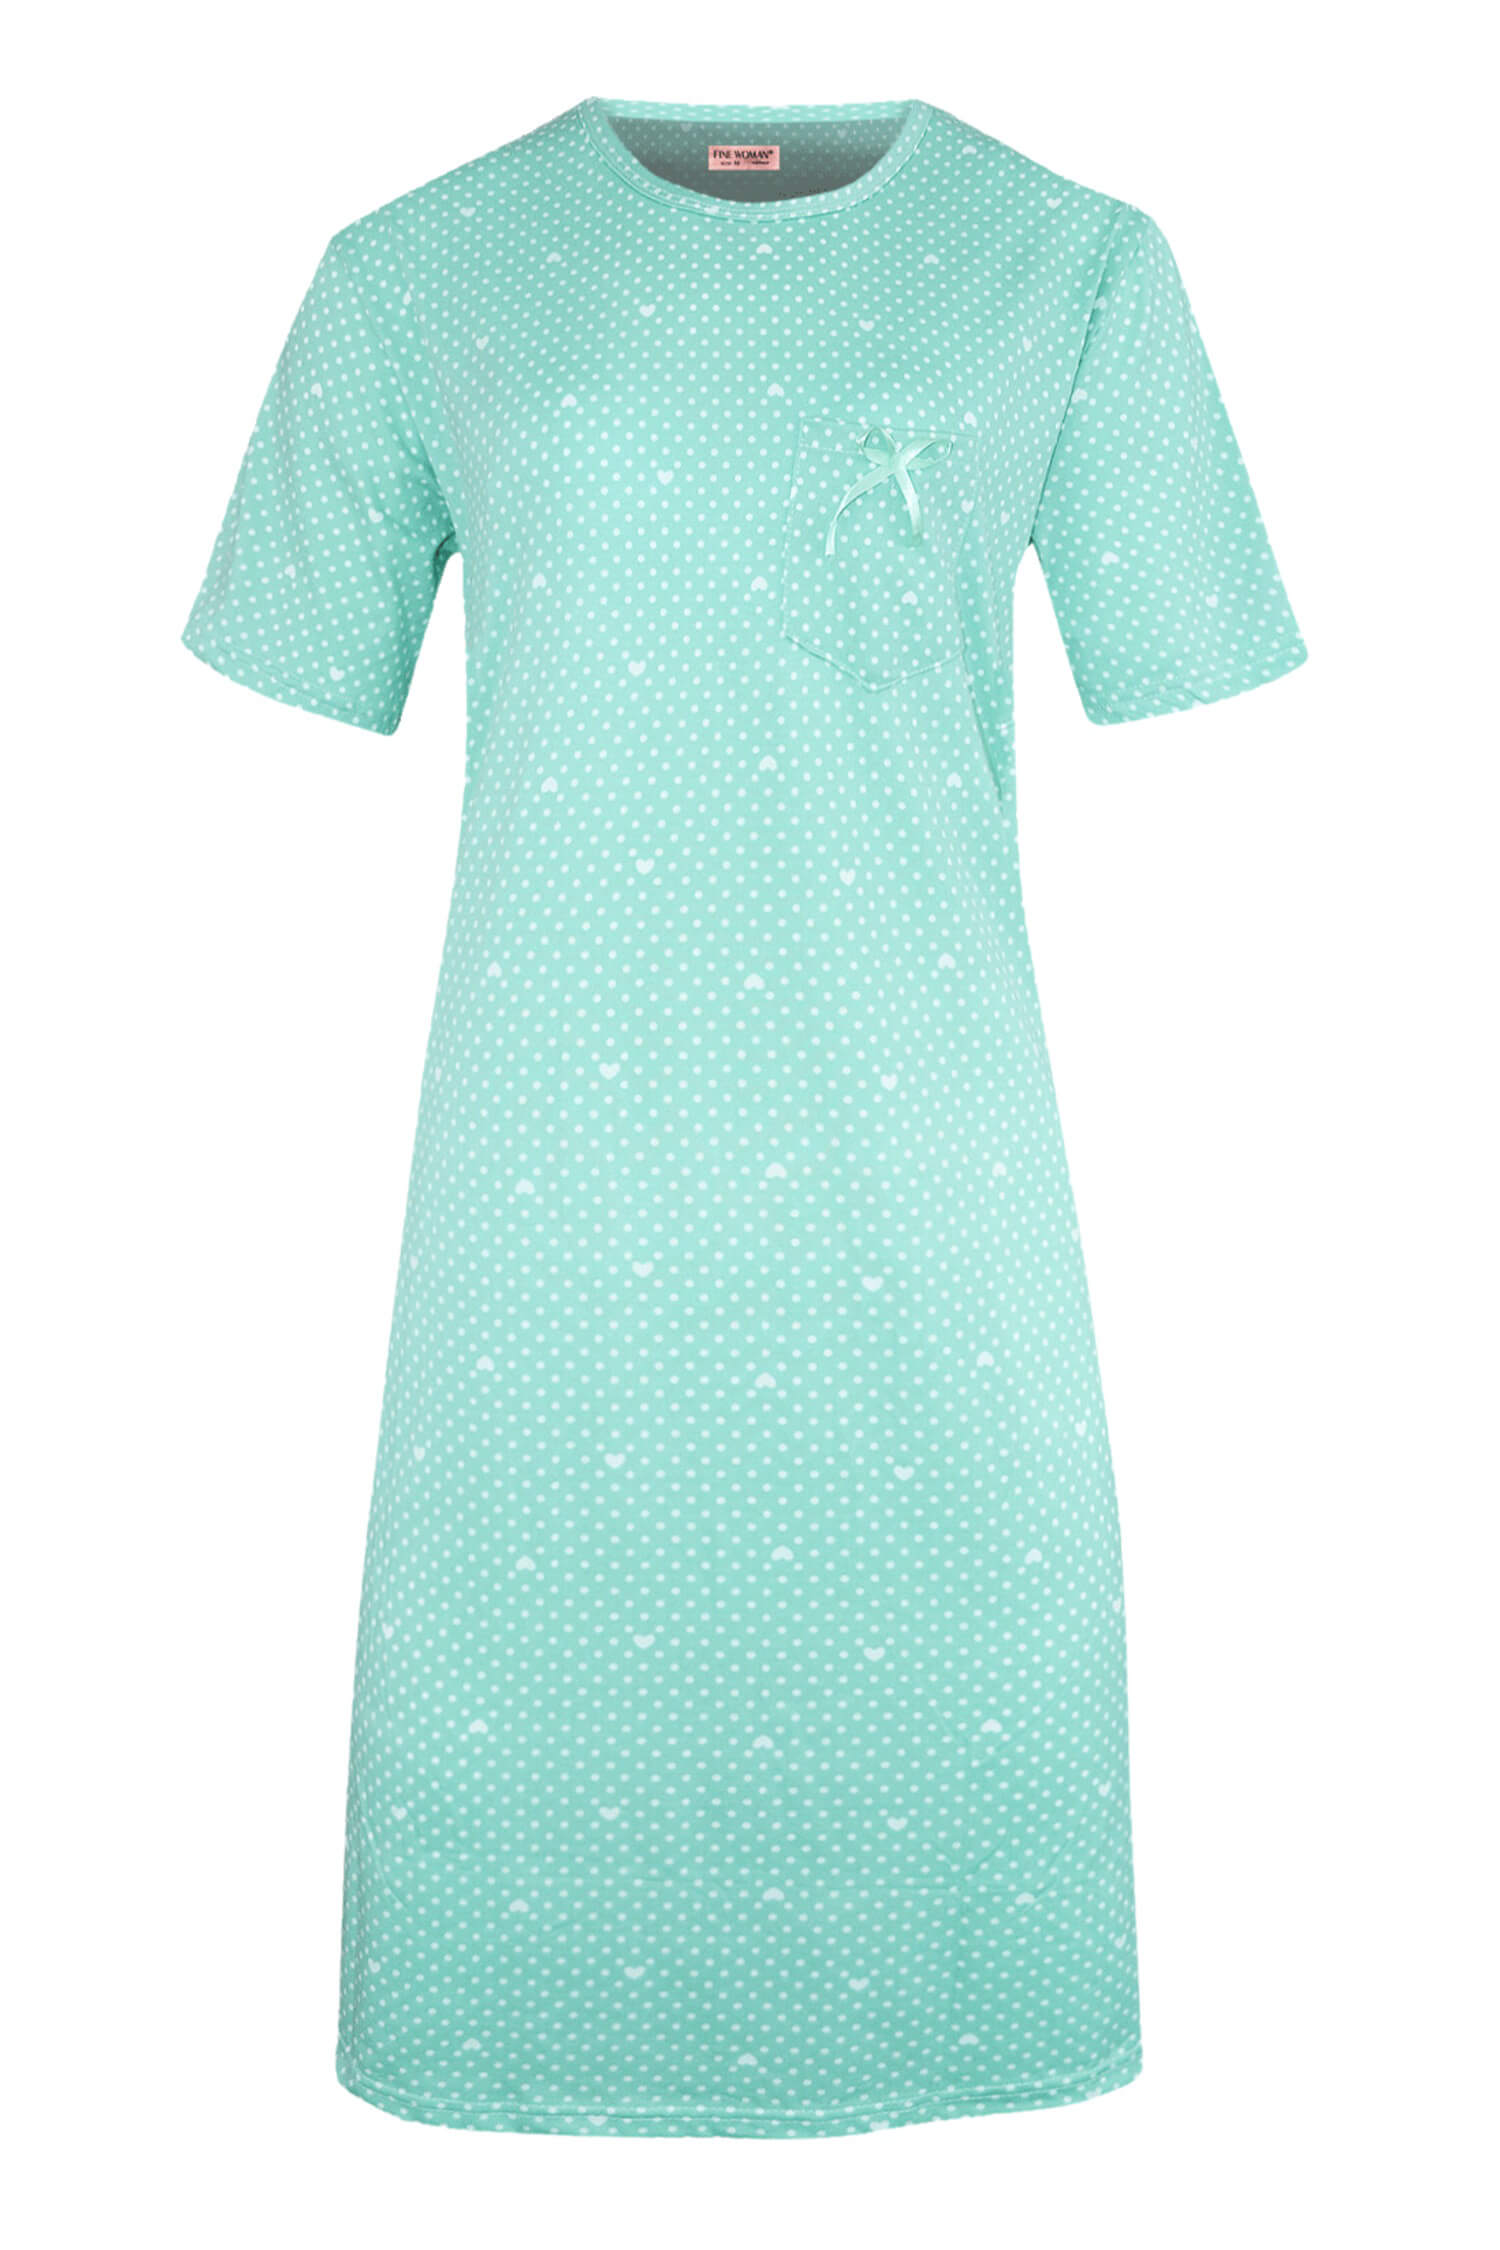 Danuška dámská noční košile s puntíky 6528 L světle zelená